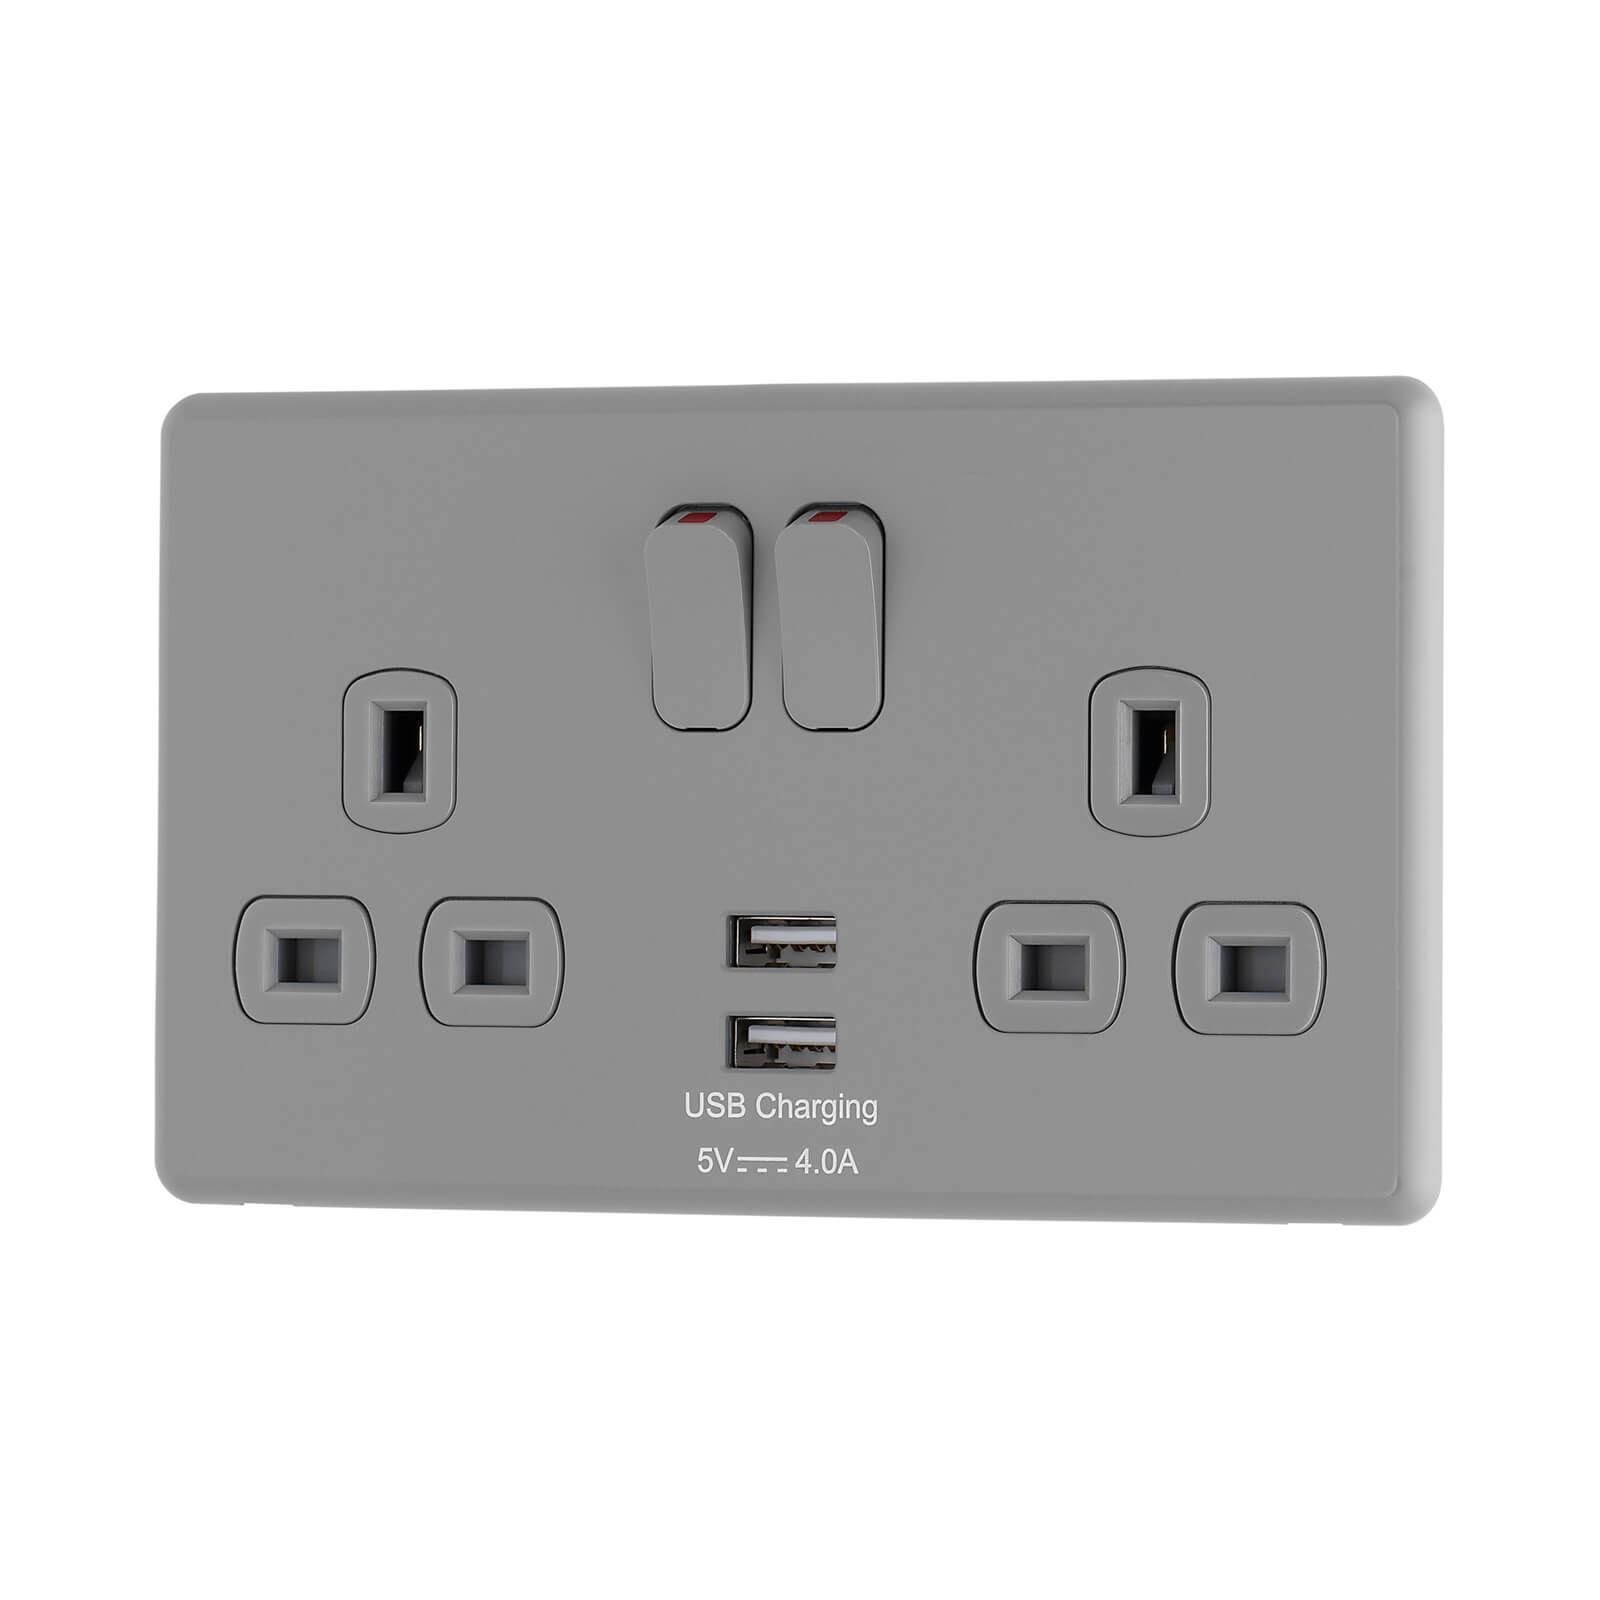 Arlec Rocker Stone Grey Double USB Socket 2 x 4A USB